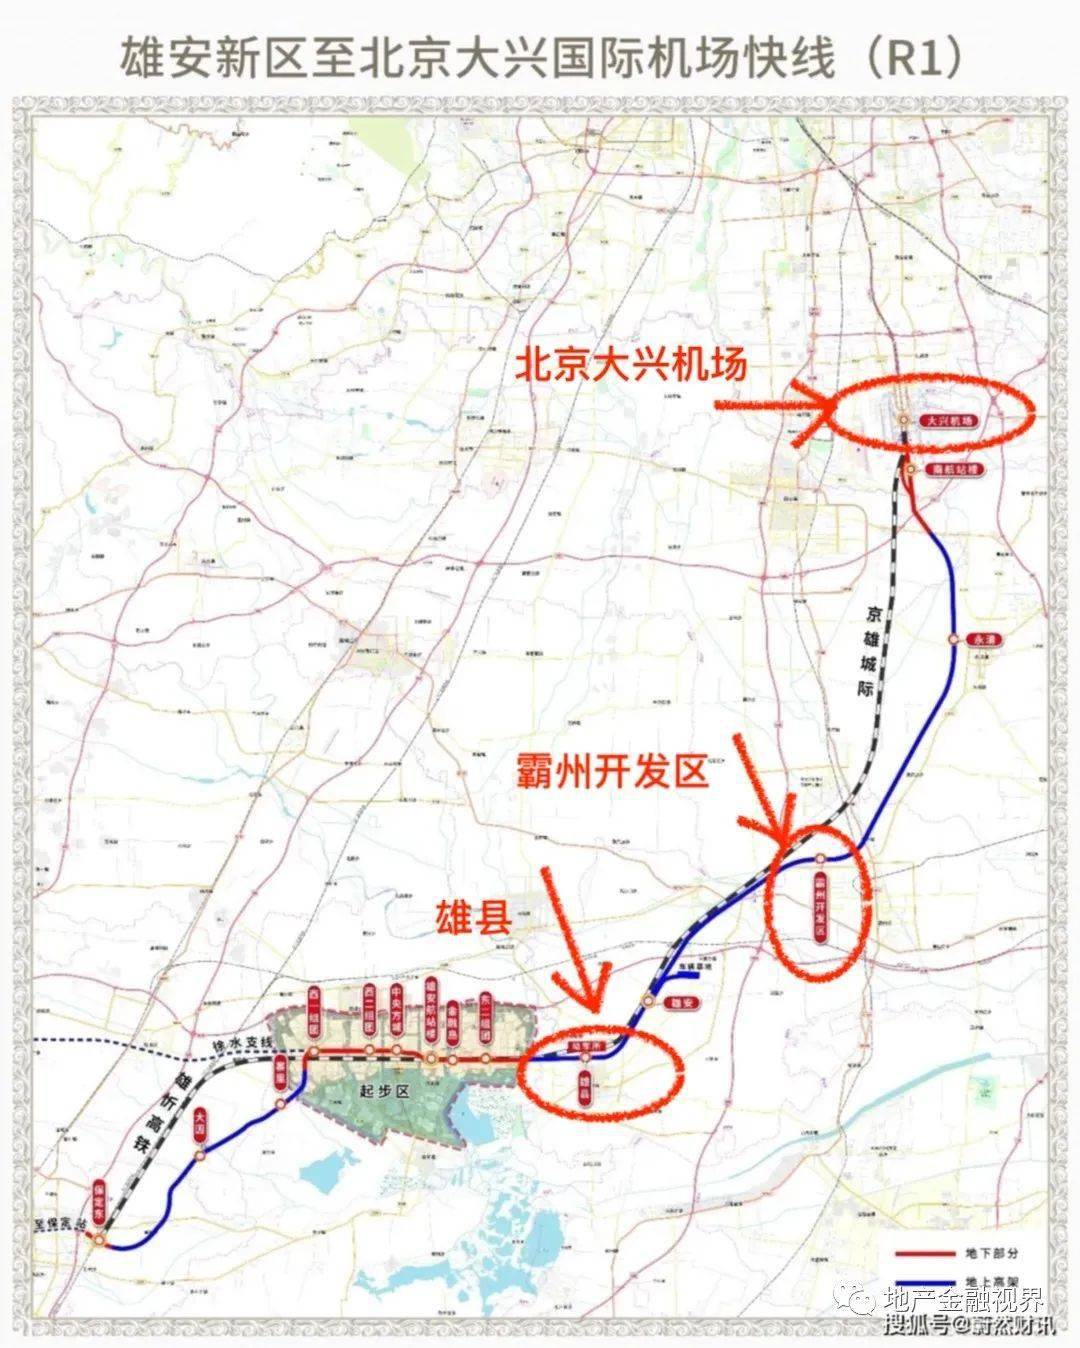 在京雄城际和r1线双轨双站的利好下,霸州很快构建起了半小时京雄生活